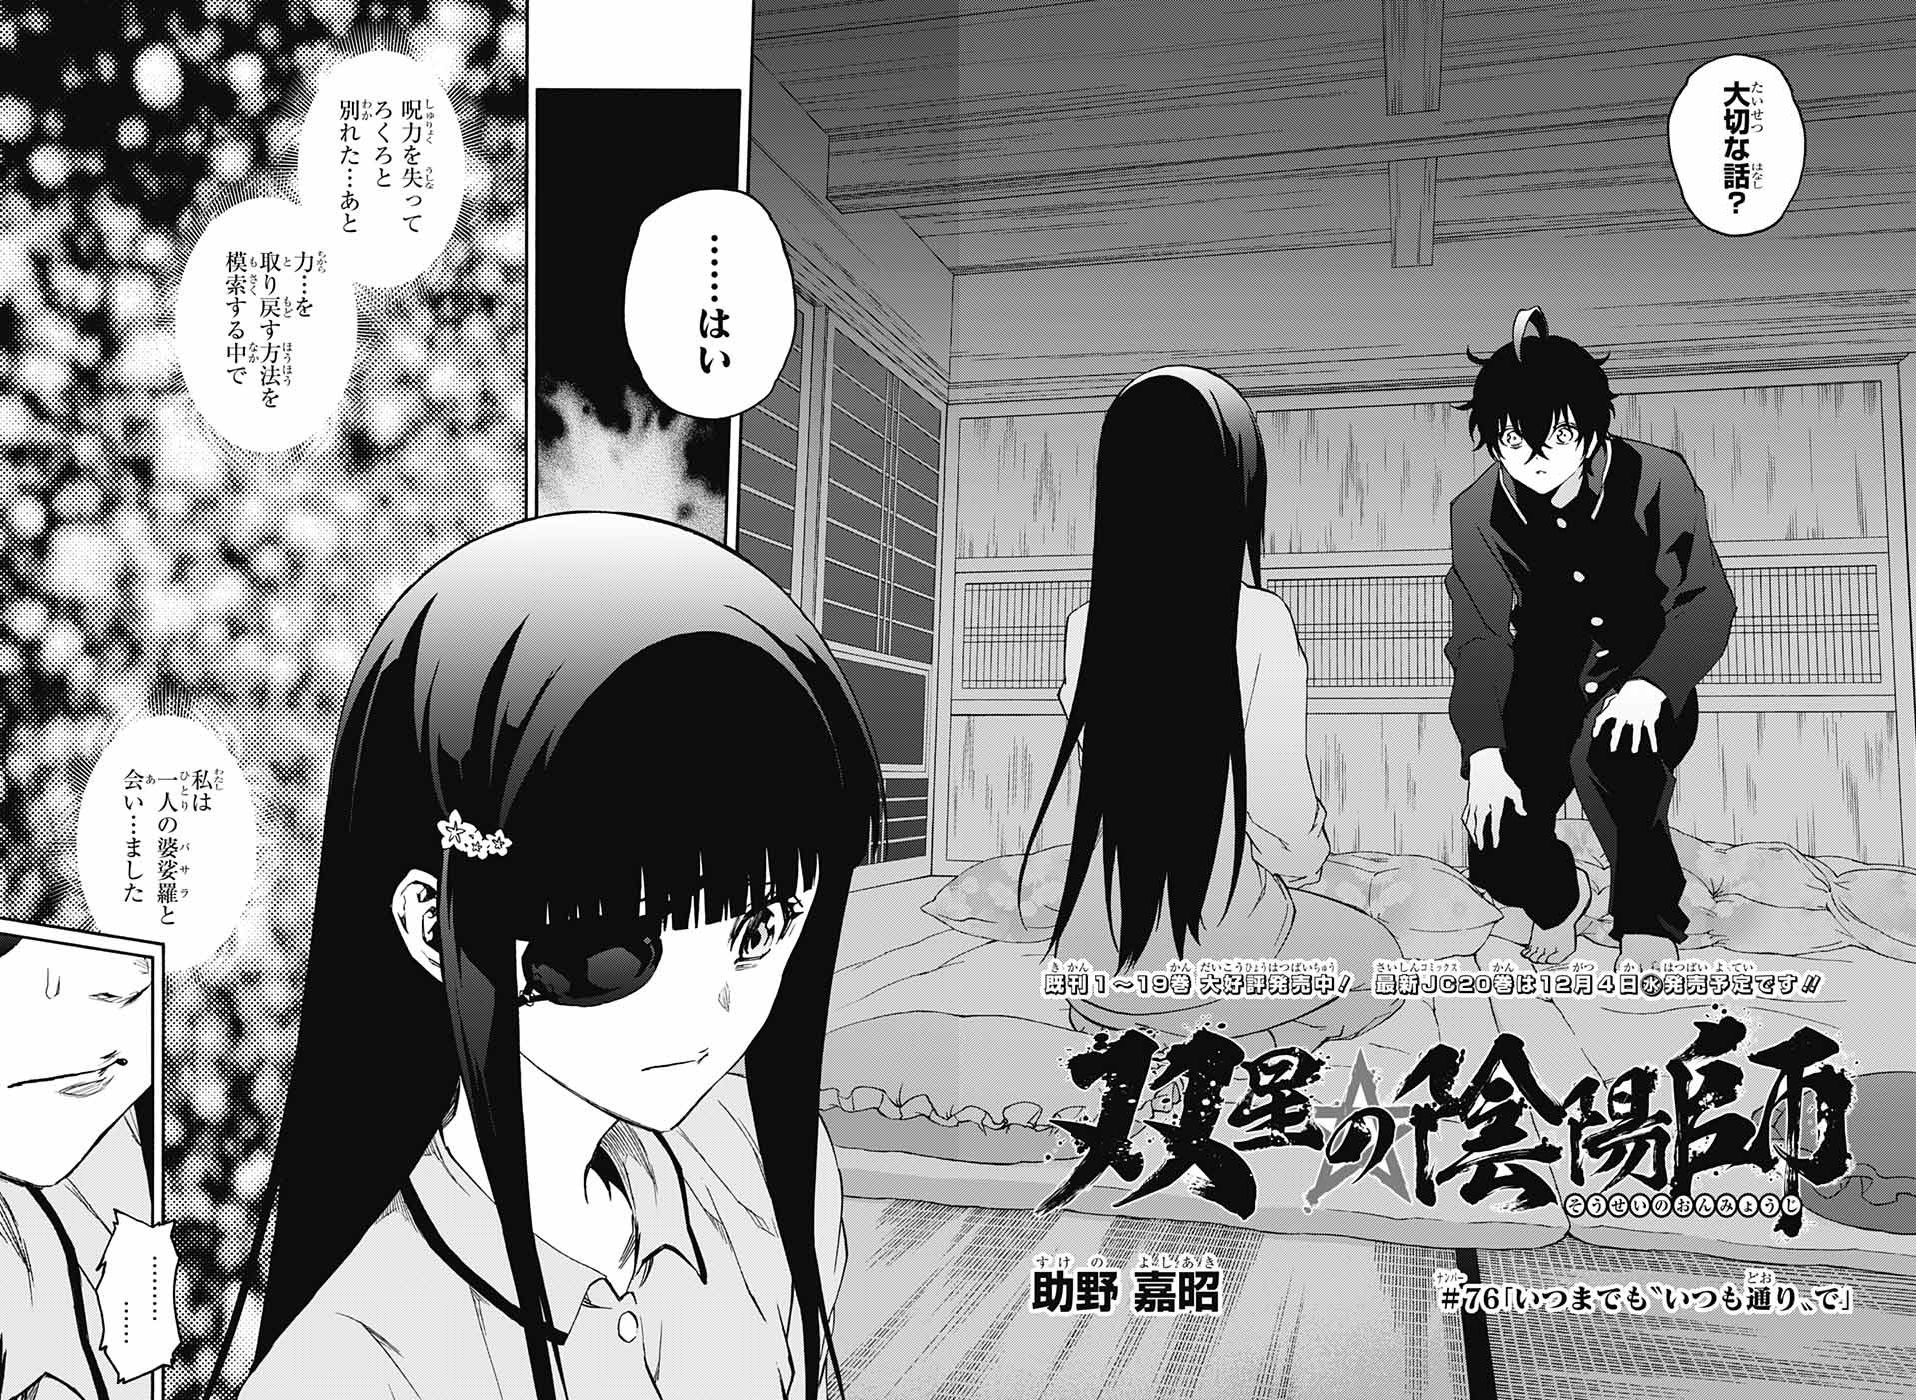 Chapter 76 Sousei No Onmyouji Twin Star Exorcists Wikia Fandom